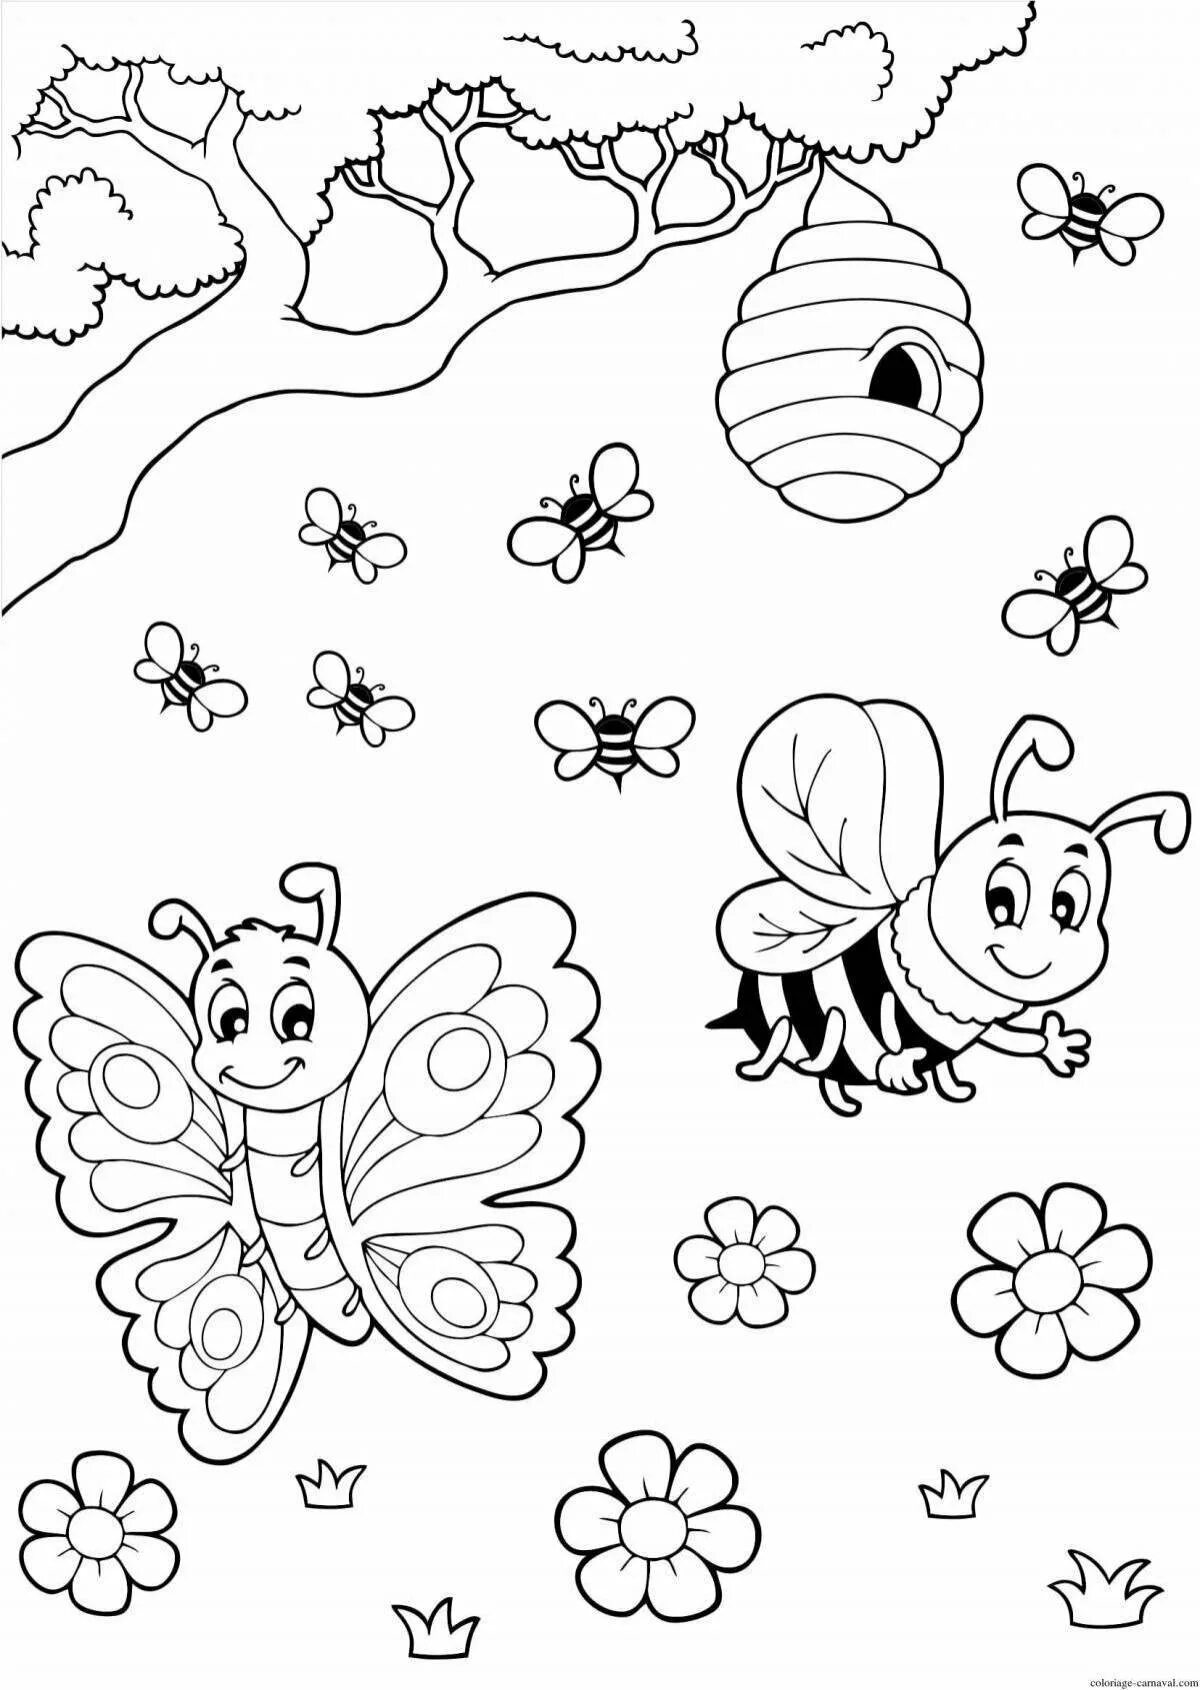 Насекомые раскраска для детей. Раскраска насекомые для малышей. Раскраски насекомые для детей 4-5 лет. Раскраска для детей 3 лет насекомые. Раскраска насекомое ребенку 4 года